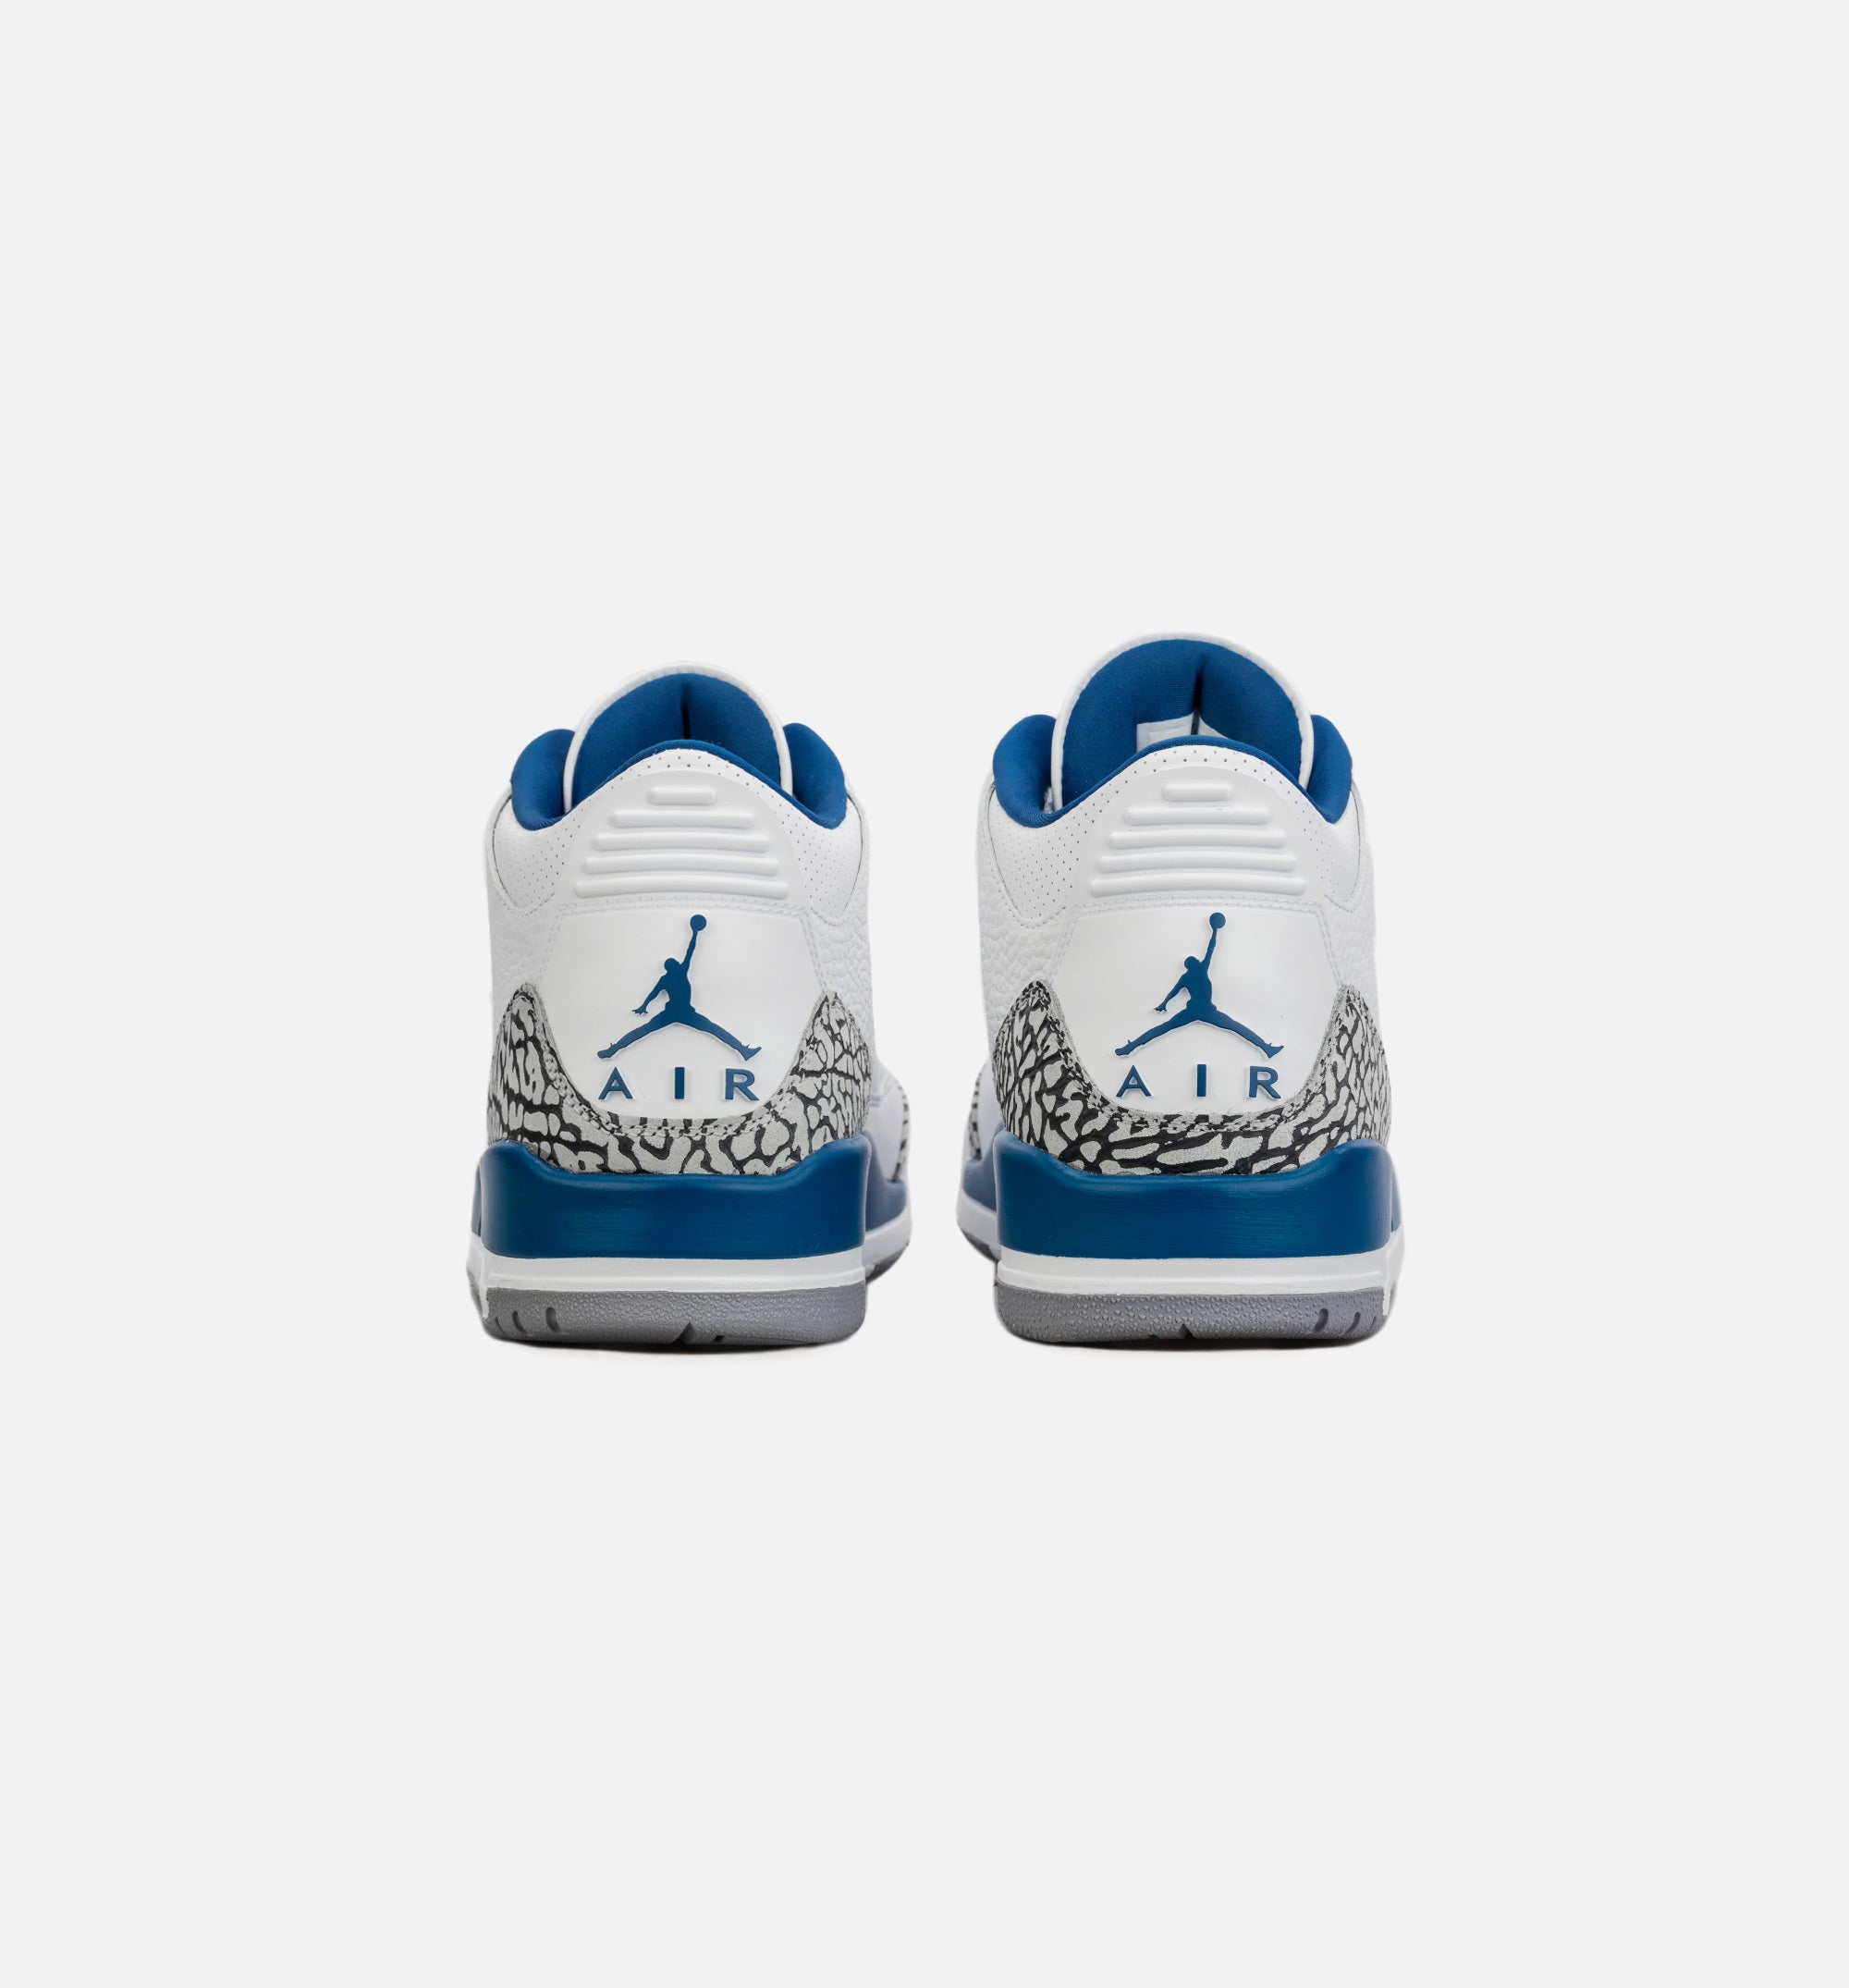 Air Jordan 3 Wizards CT8532-148